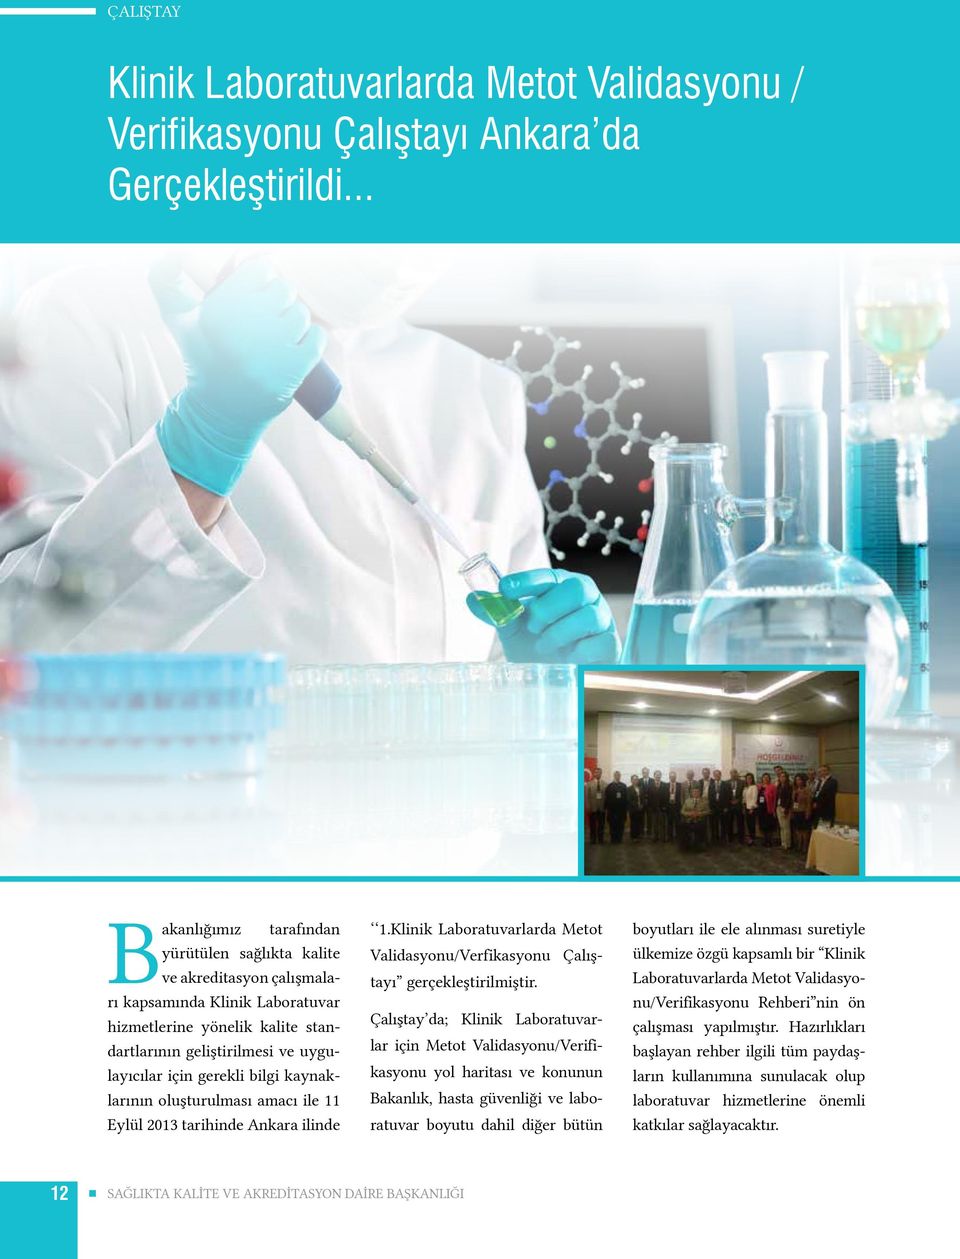 bilgi kaynaklarının oluşturulması amacı ile 11 Eylül 2013 tarihinde Ankara ilinde 1.Klinik Laboratuvarlarda Metot Validasyonu/Verfikasyonu Çalıştayı gerçekleştirilmiştir.